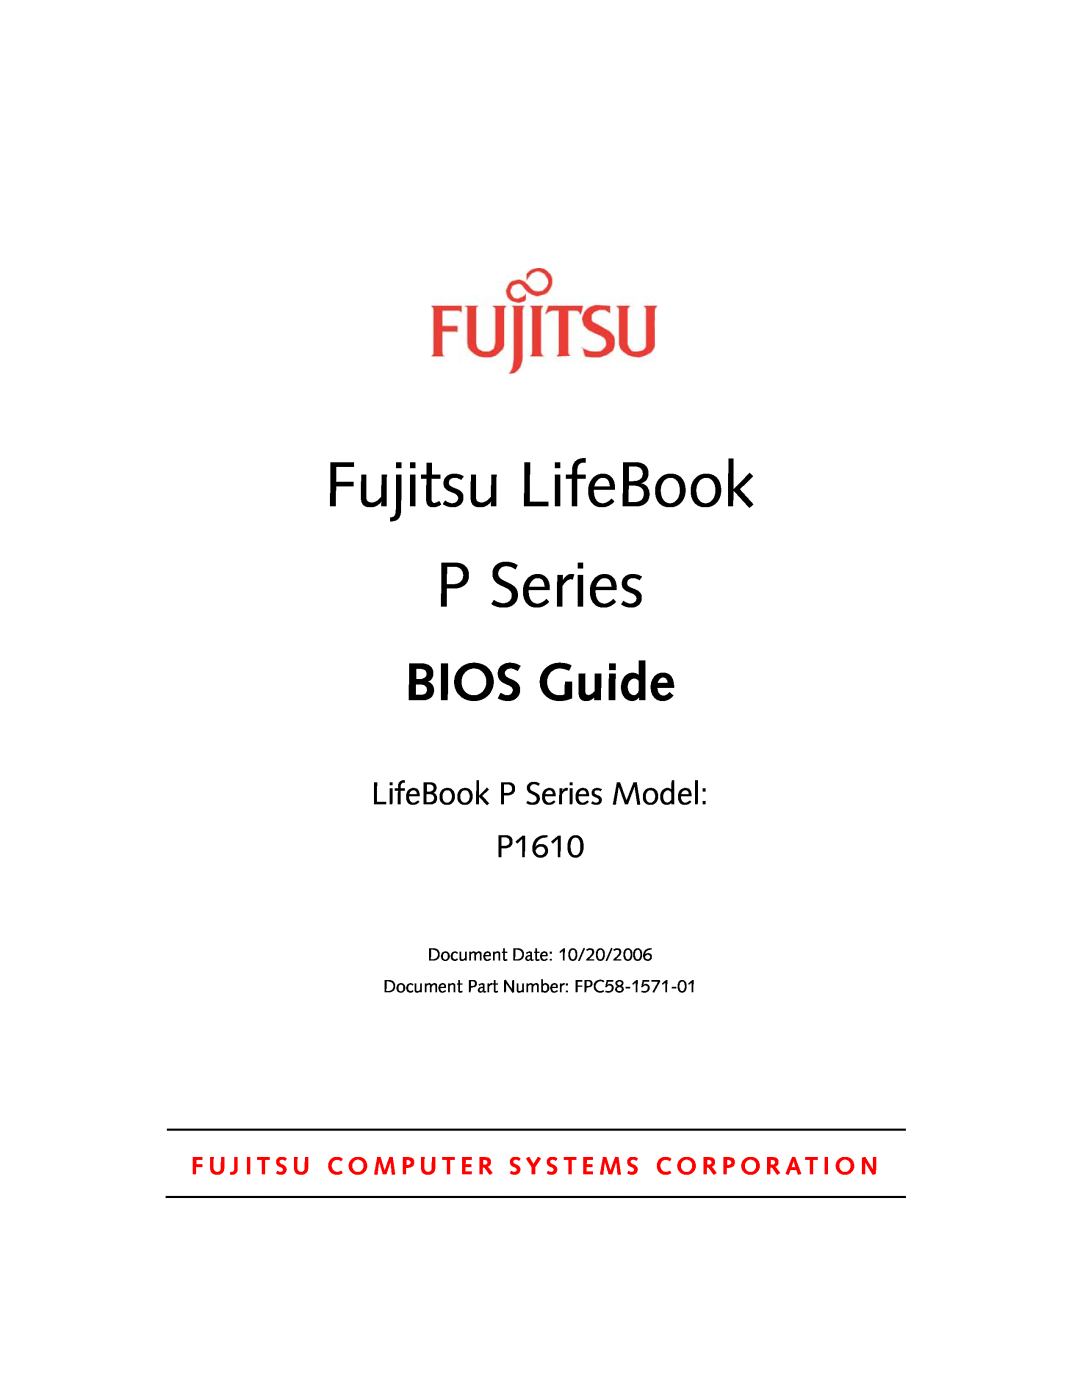 Fujitsu Siemens Computers manual Fujitsu LifeBook, BIOS Guide, LifeBook P Series Model P1610 